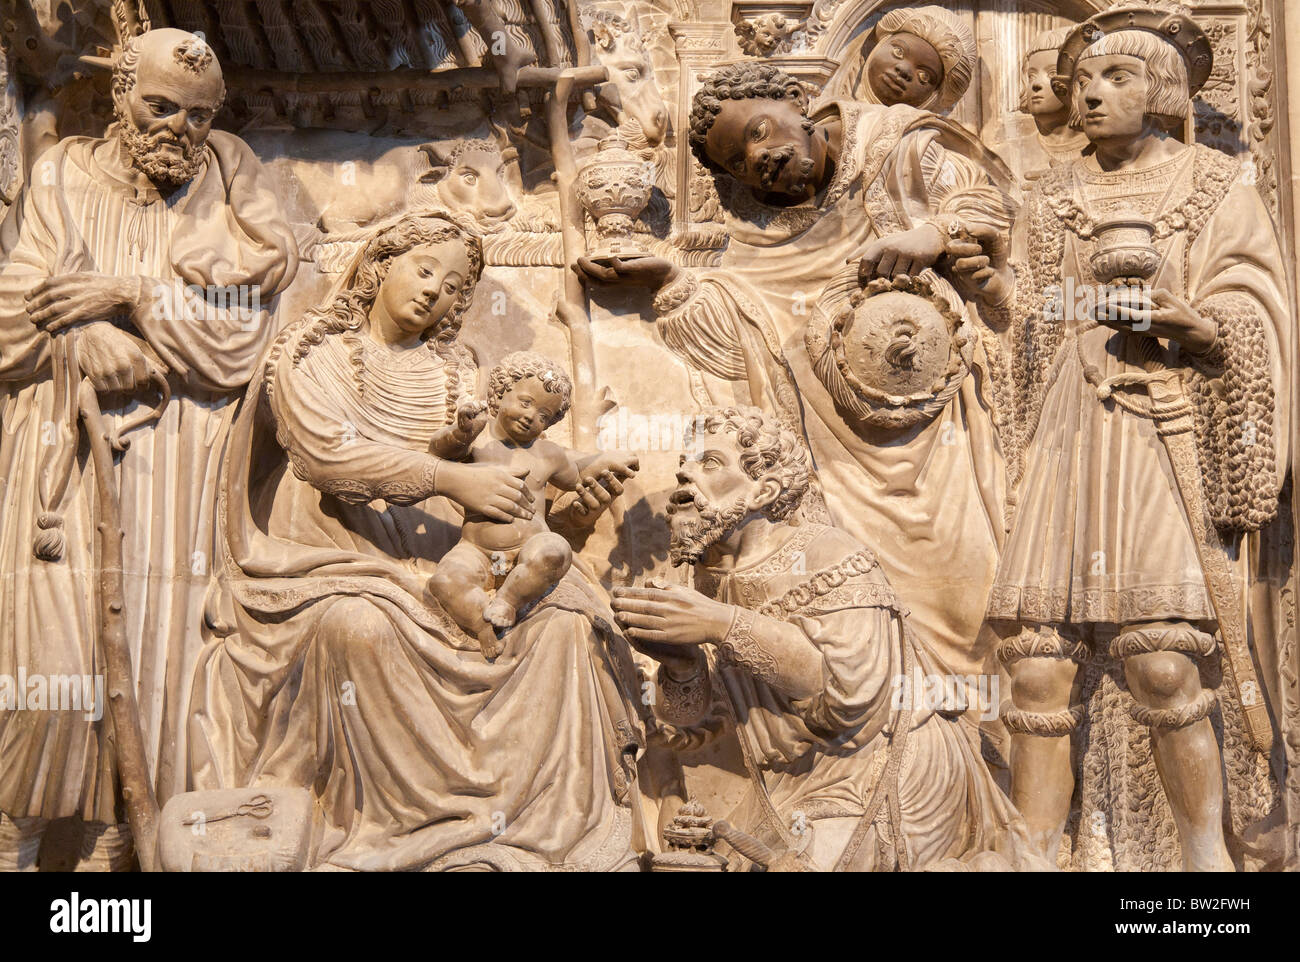 Nativity scene - Ávila Cathedral, Spain Stock Photo